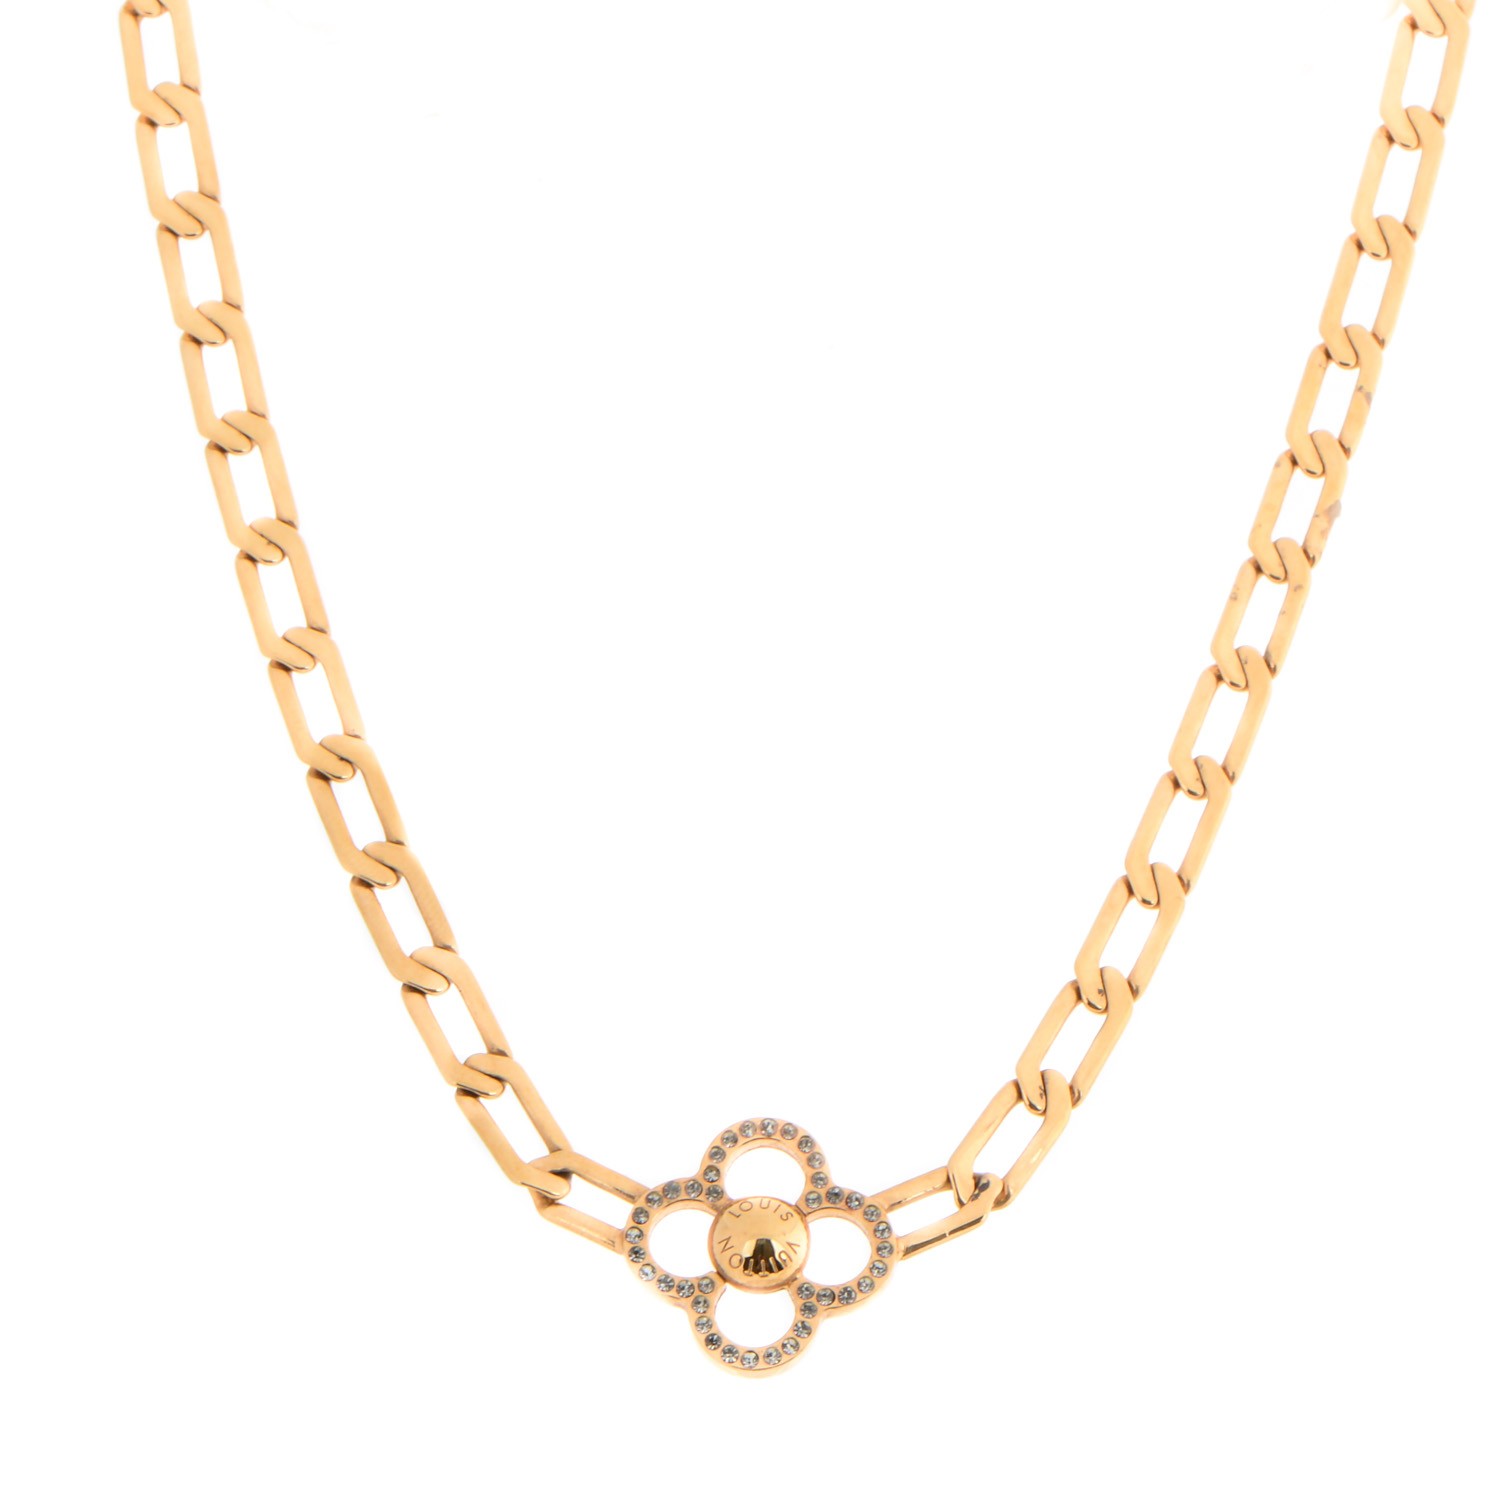 LOUIS VUITTON Swarovski Crystal Flower Power Necklace Gold 153676